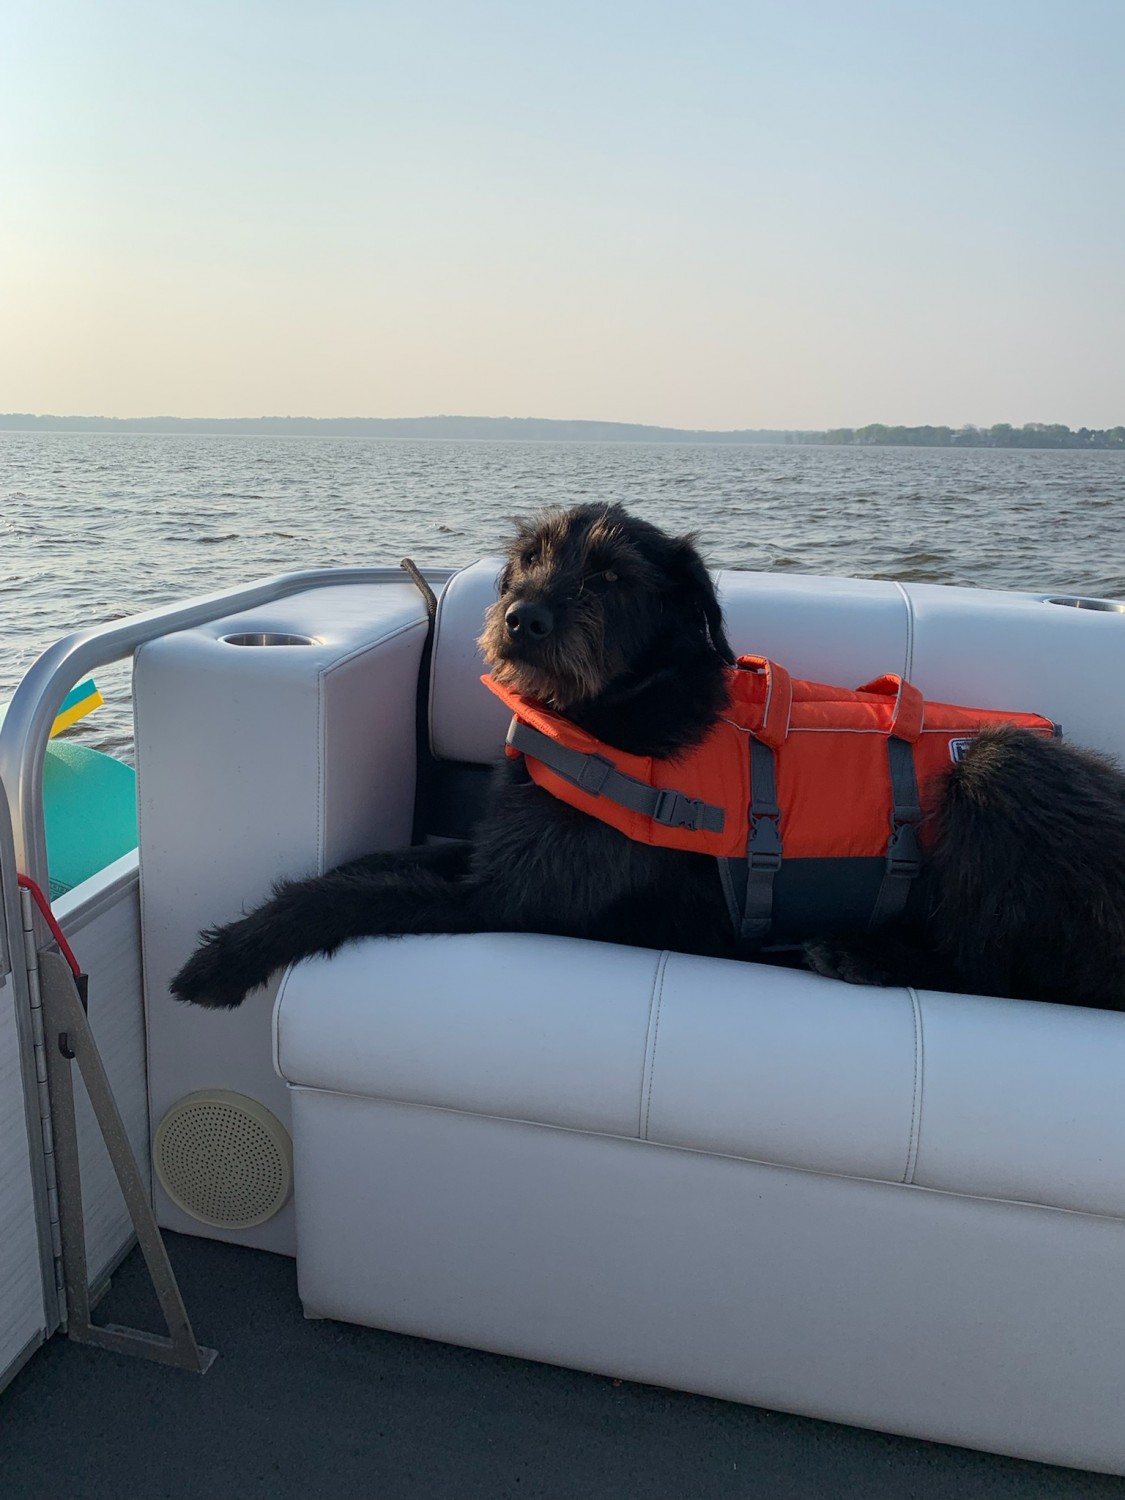 Dog on Boat